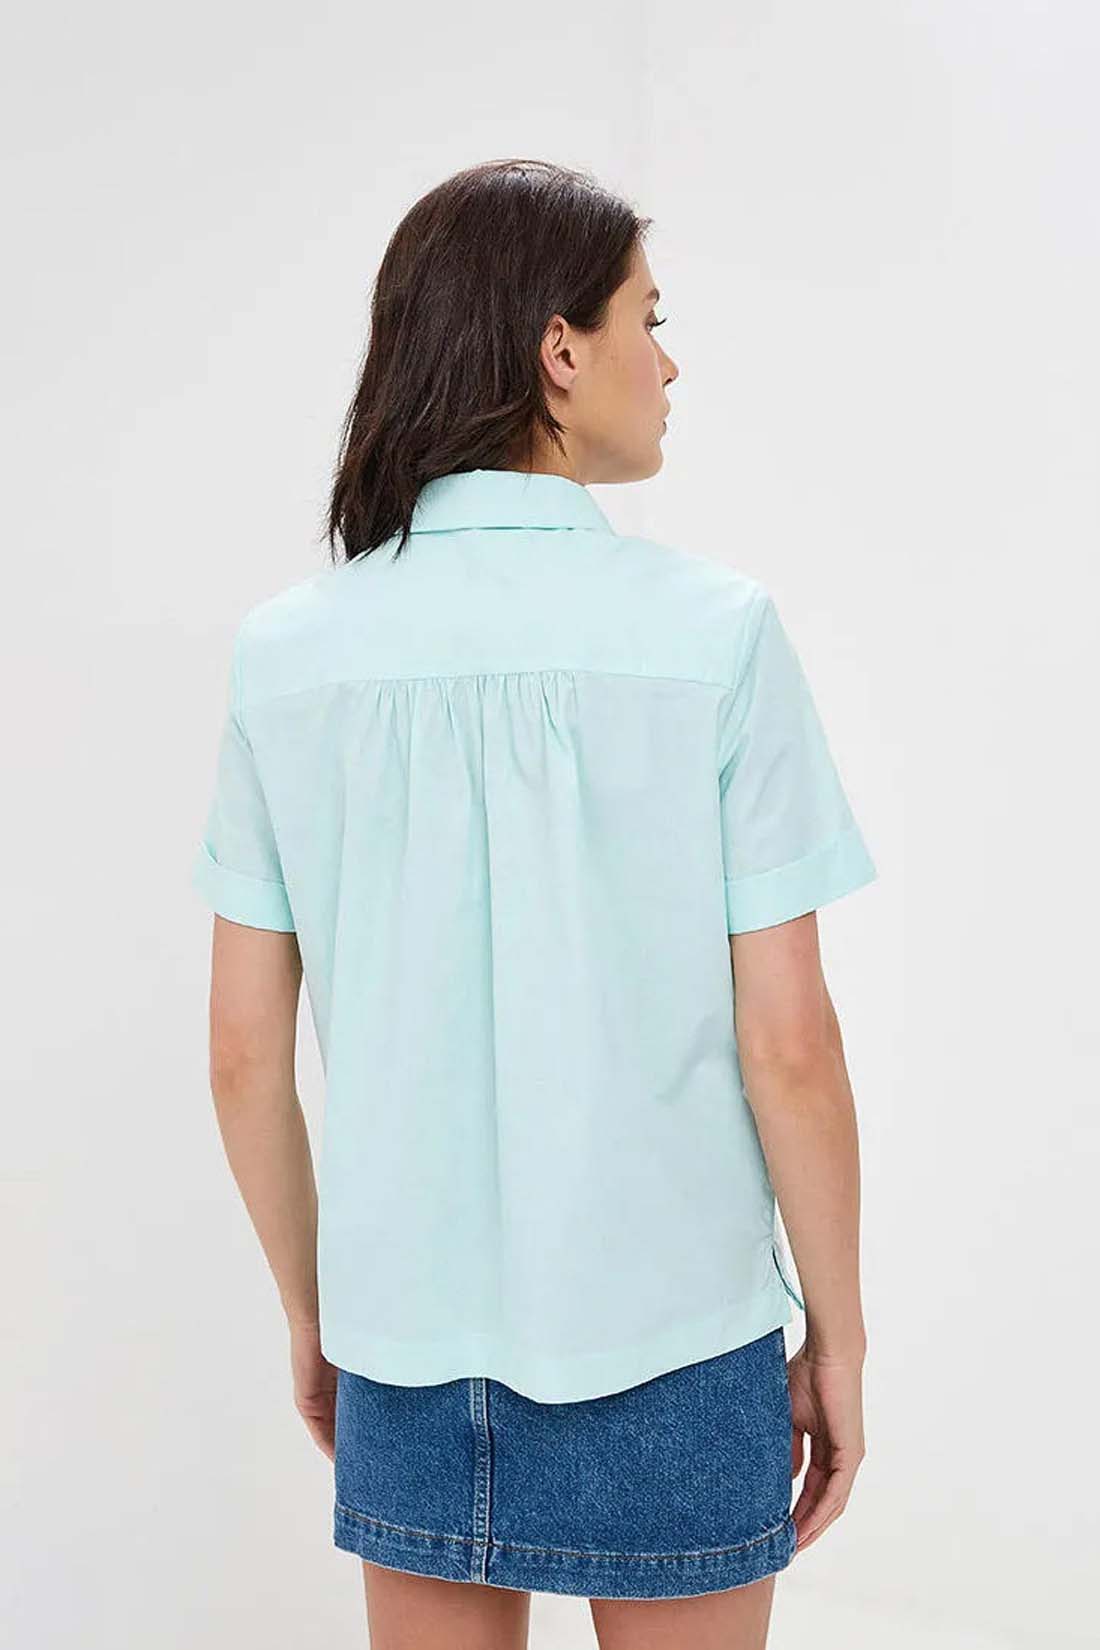 Рубашка с россыпью камней (арт. baon B199029), размер M, цвет голубой Рубашка с россыпью камней (арт. baon B199029) - фото 2